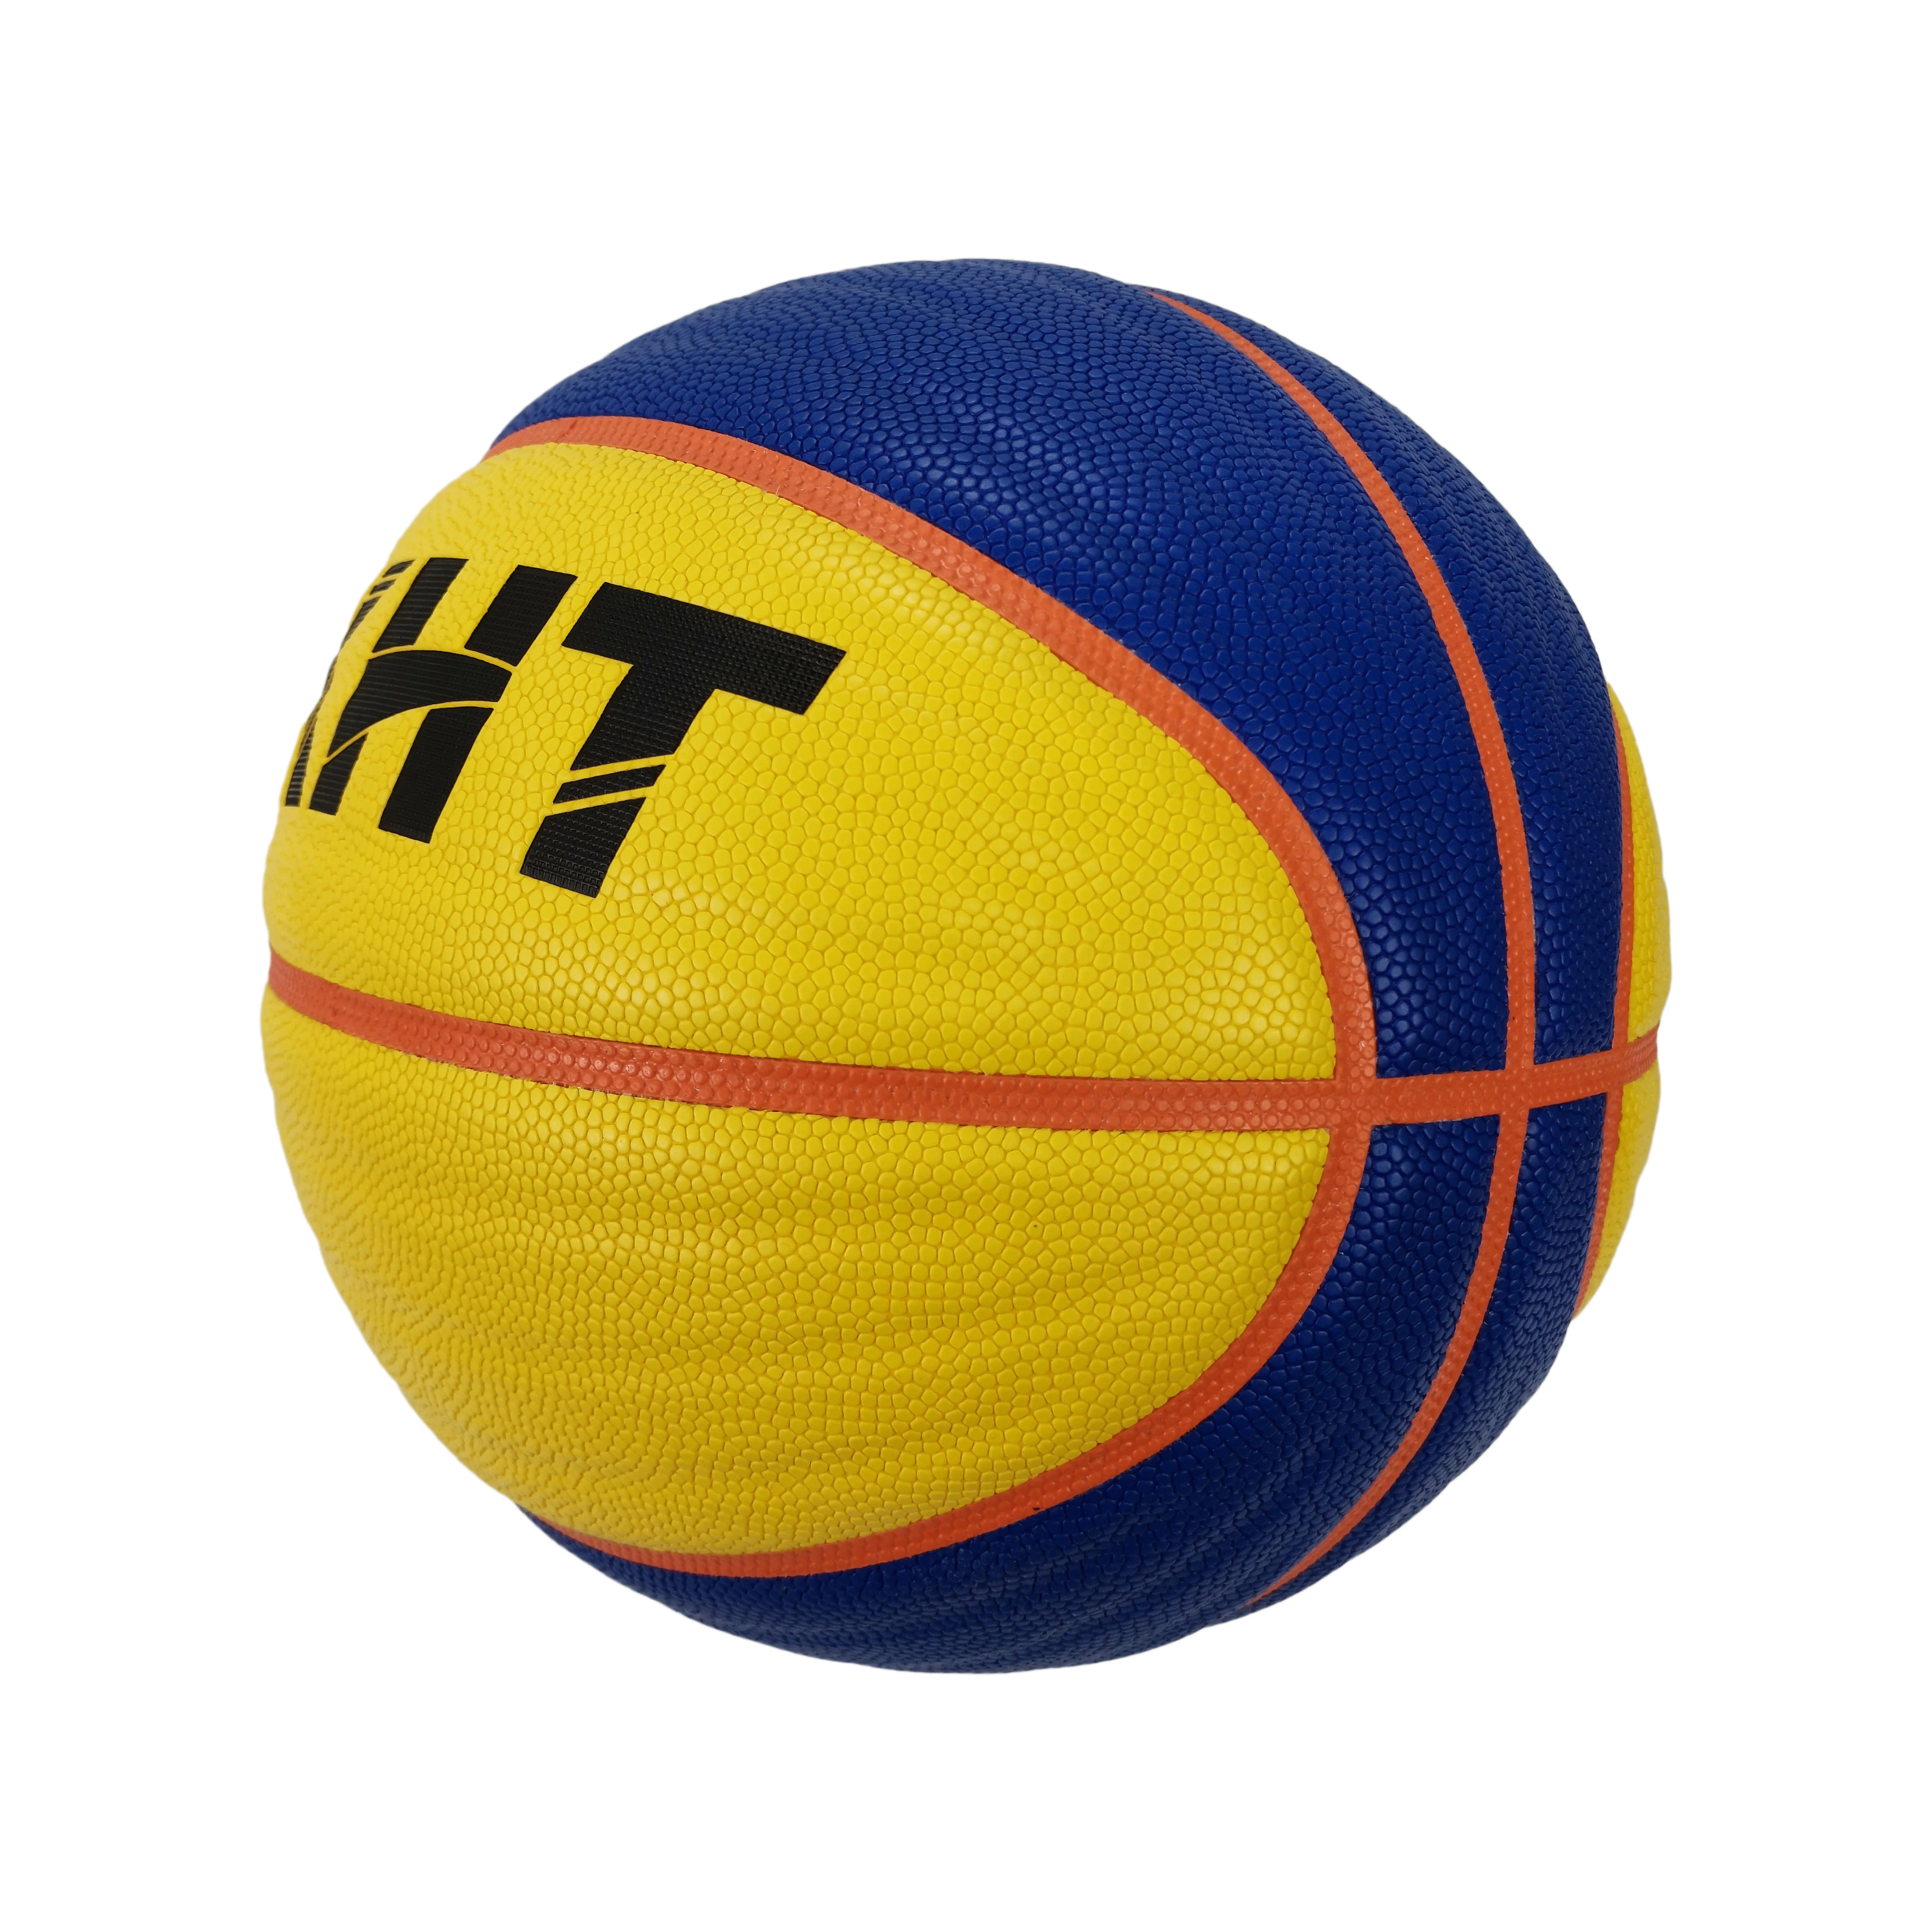 Баскетбольный мяч ФИБА. Баскетбольный мяч FIBA 3x3 Official 6. Футболка 3x3 FIBA. Насколь размером отличается мяч баскетбольный 7 и мяч ФИБА 3x3. Канал ball